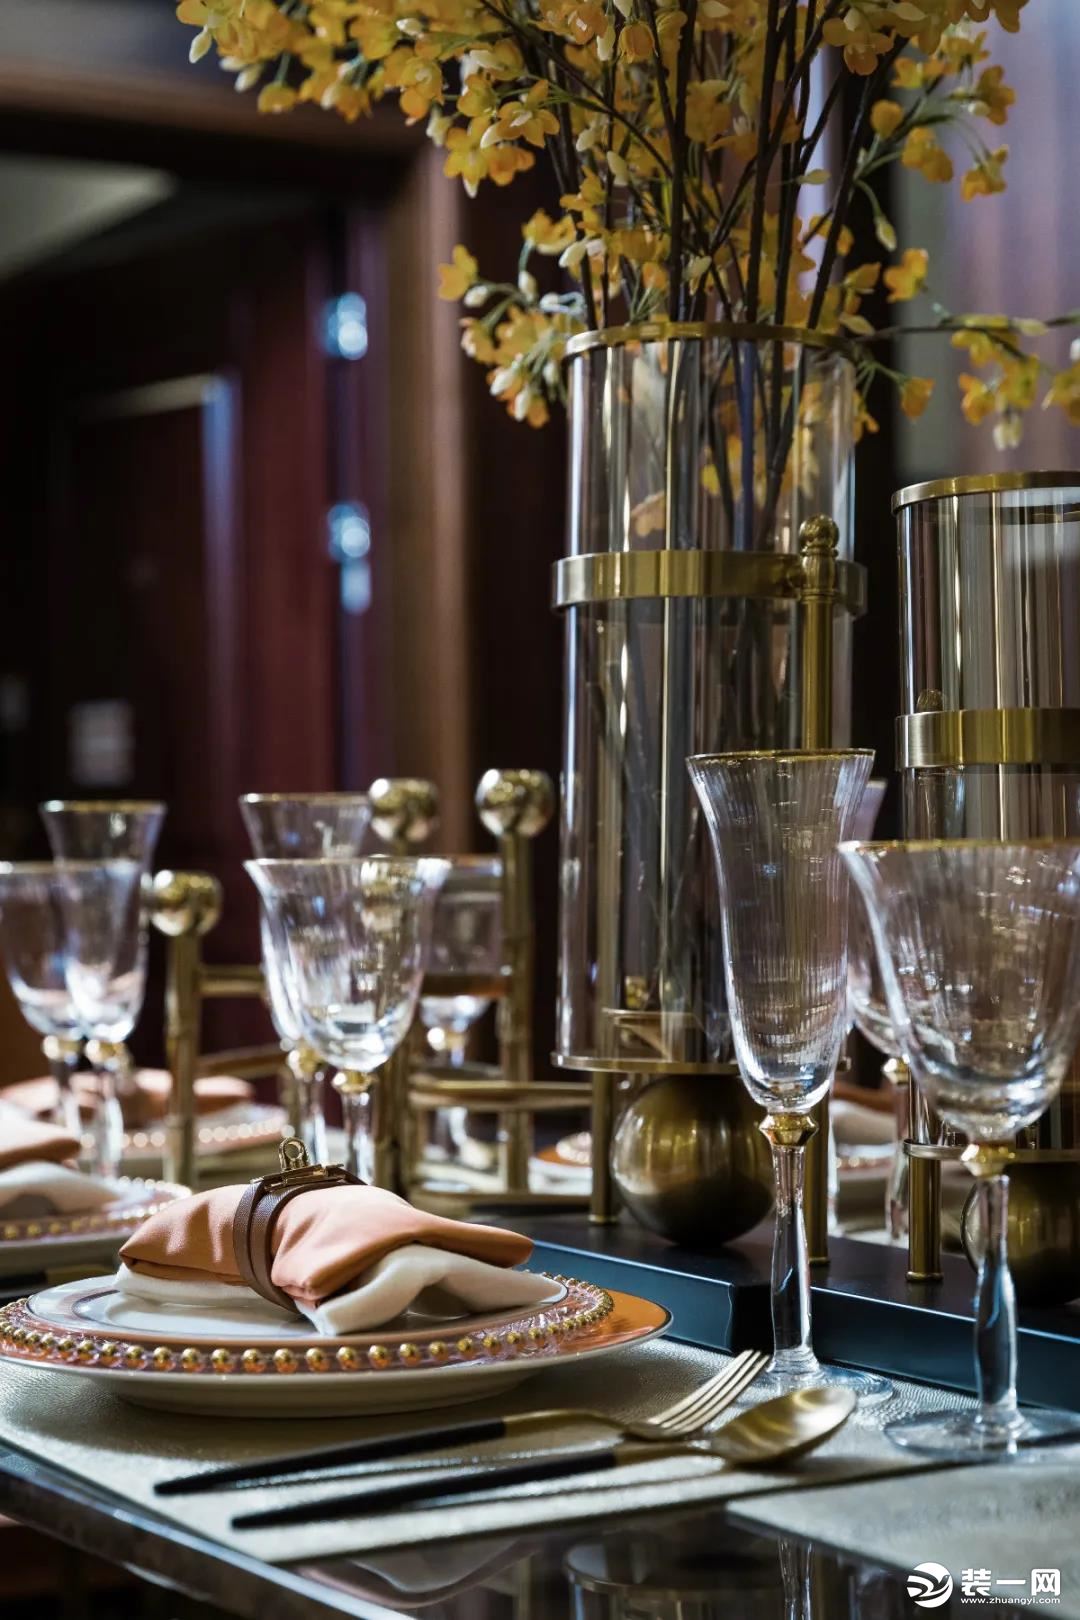 ▲餐桌上的花瓶与杯具，以玻璃+金属的材质，搭配上仪式感满满的餐具，带来一种时尚精致的用餐氛围感。